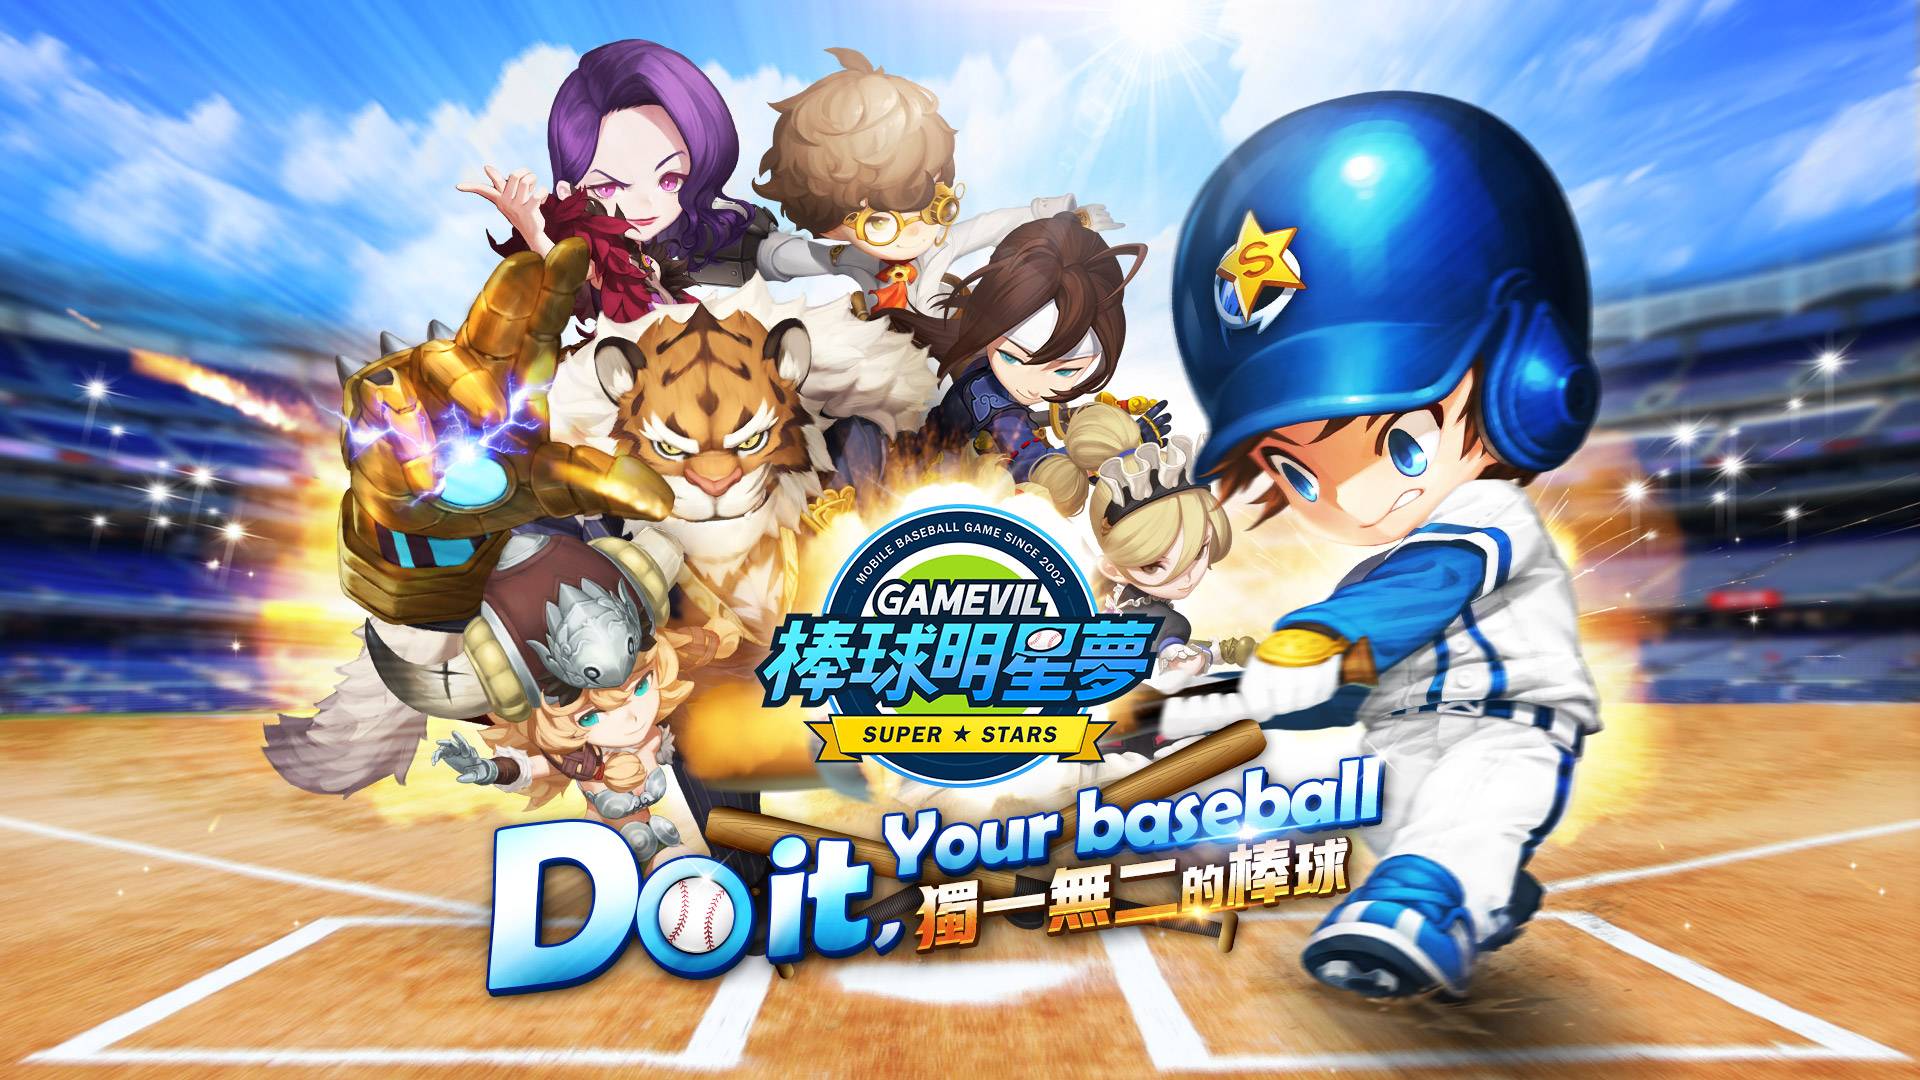 《棒球明星夢》搶先開放Google Play預先註冊 全力揮擊你的棒球夢！